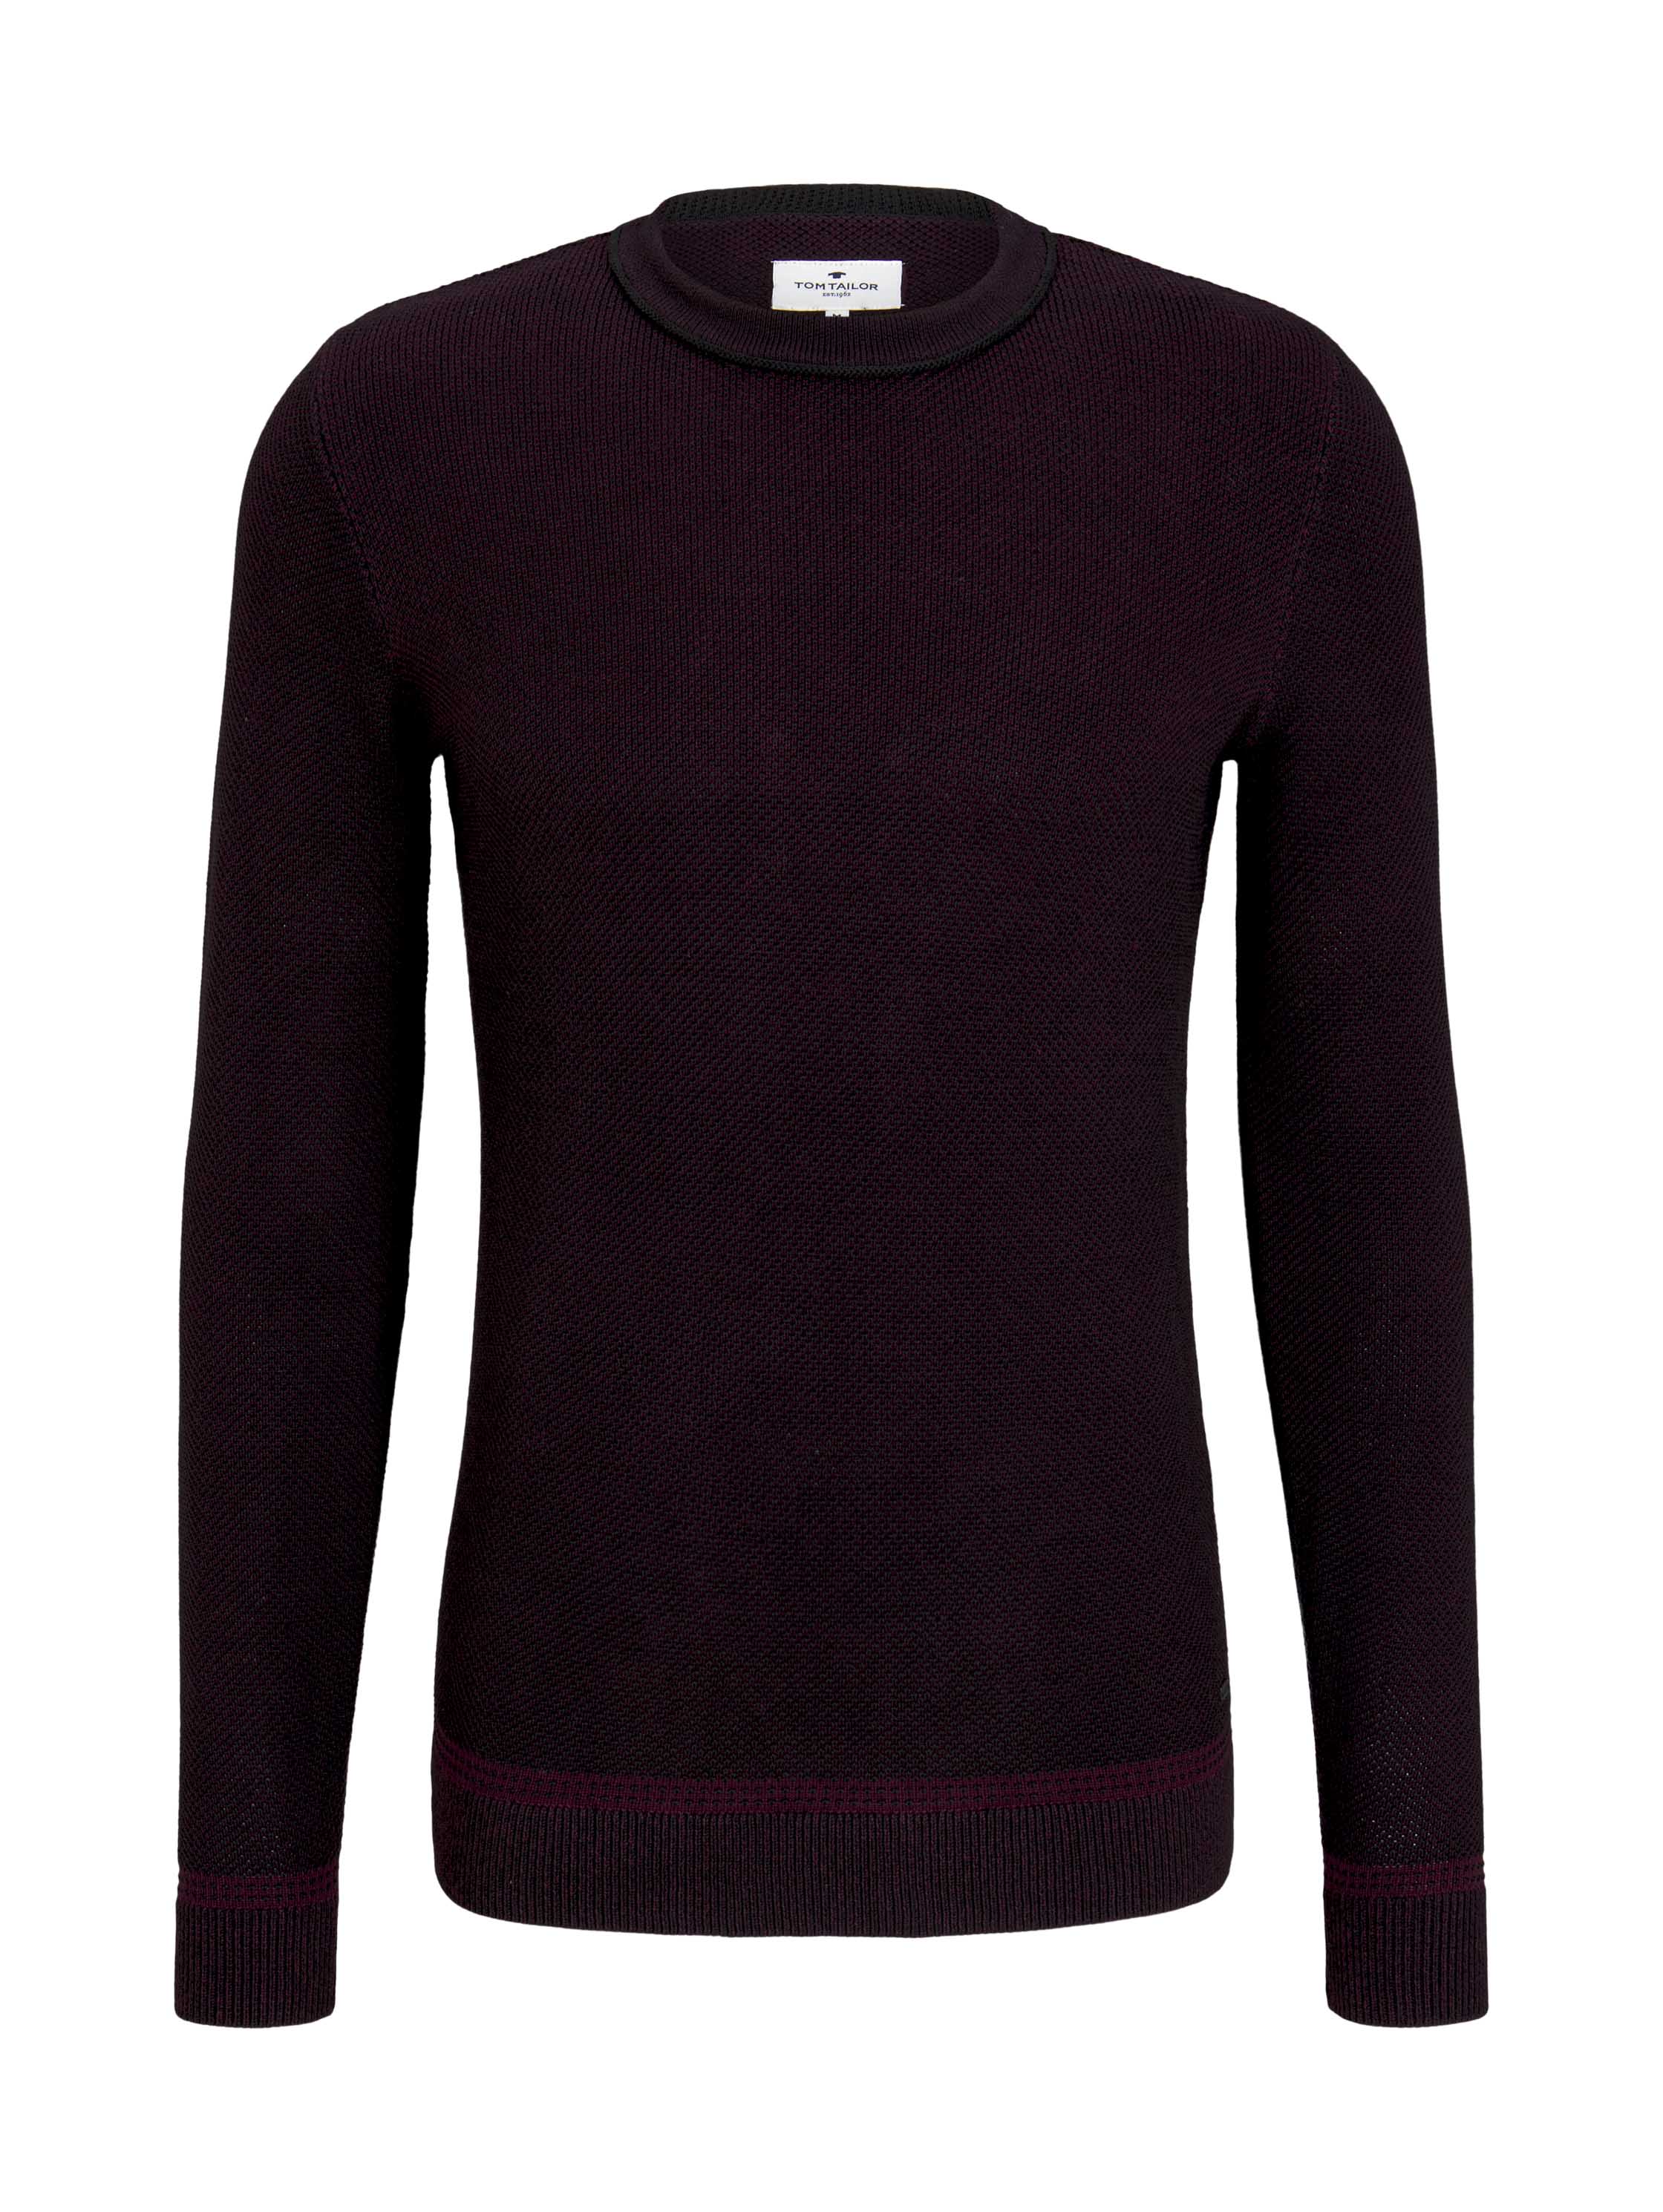 birdseye sweater, purple black birdseye jacquard